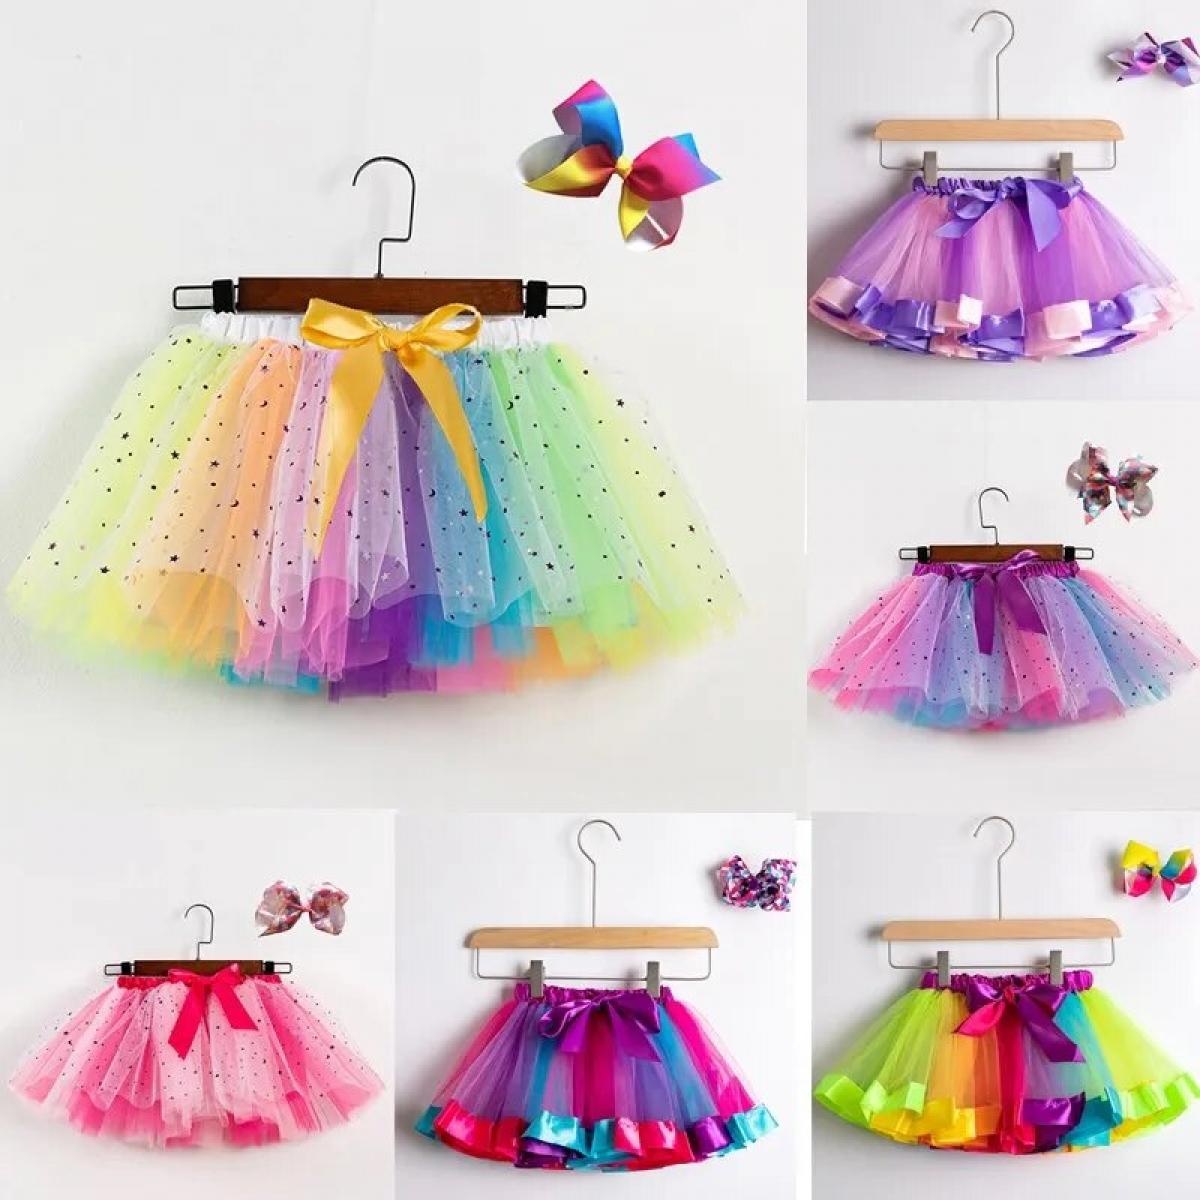 Falda tutú de arcoíris para niña, ropa de malla de verano, ropa de tul para fiesta y baile, minifalda de Ballet colorida, noveda